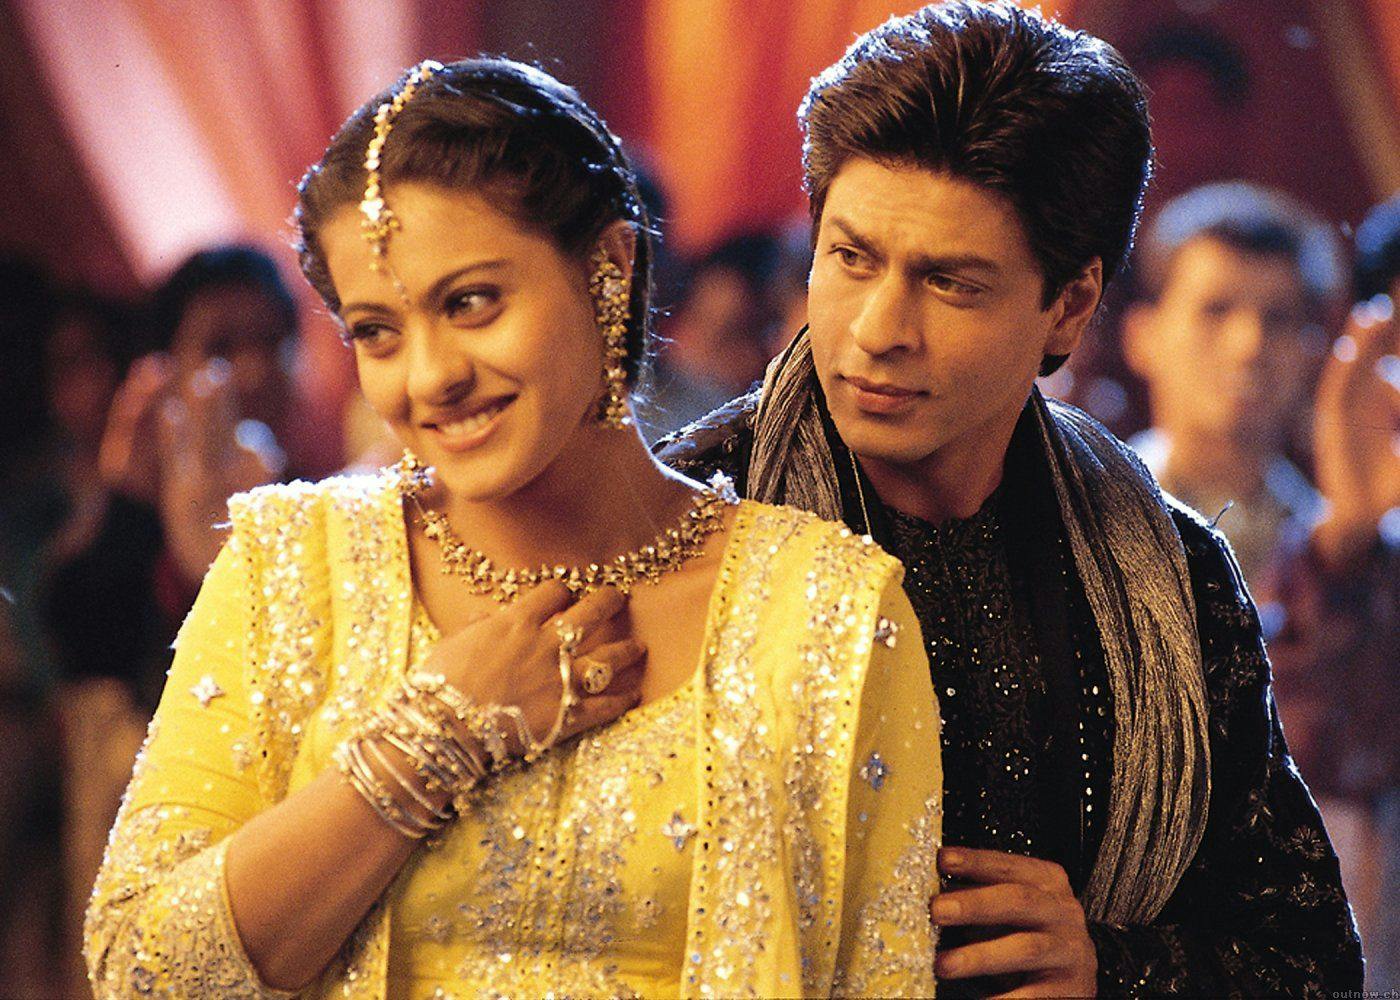 Shah Rukh Khan and Kajol in Kabhi Khushi Kabhie Gham (2001)